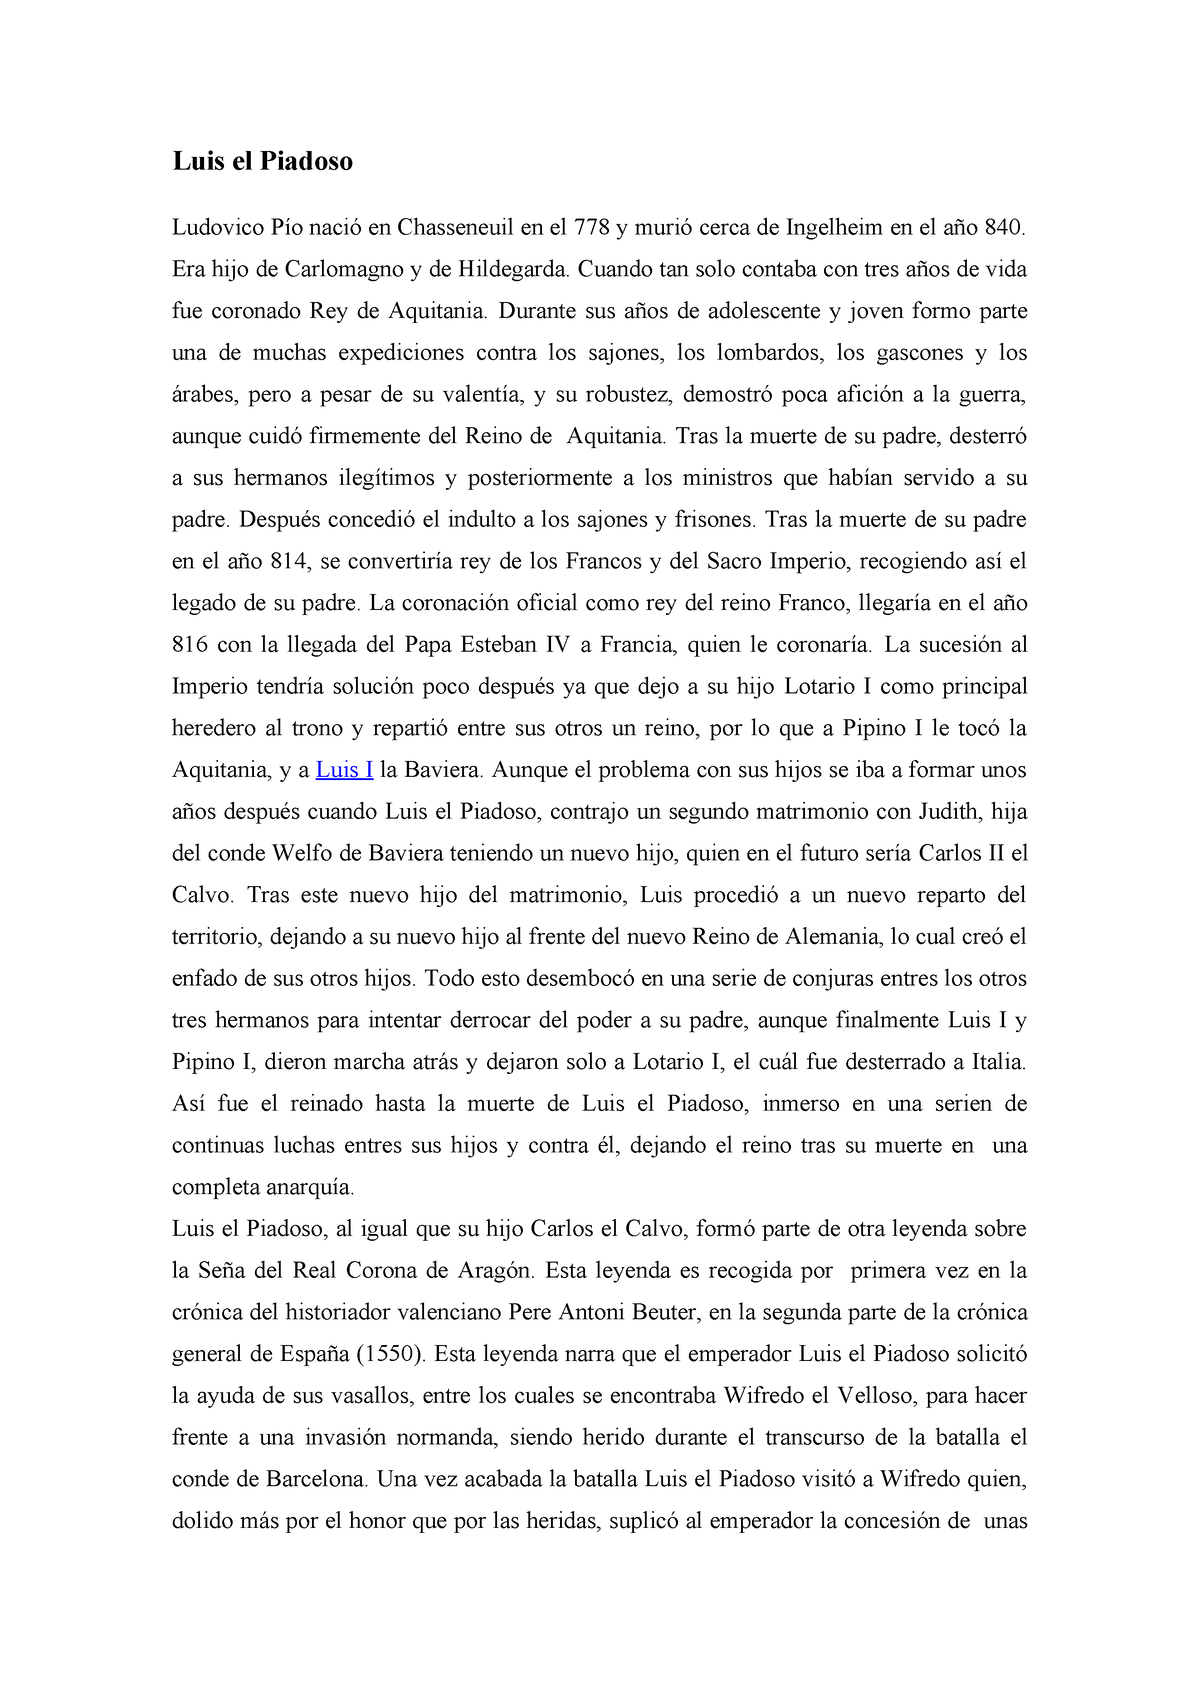 Vida de Luis el Piadoso y Carlos el Calvo - Historia Medieval de - StuDocu